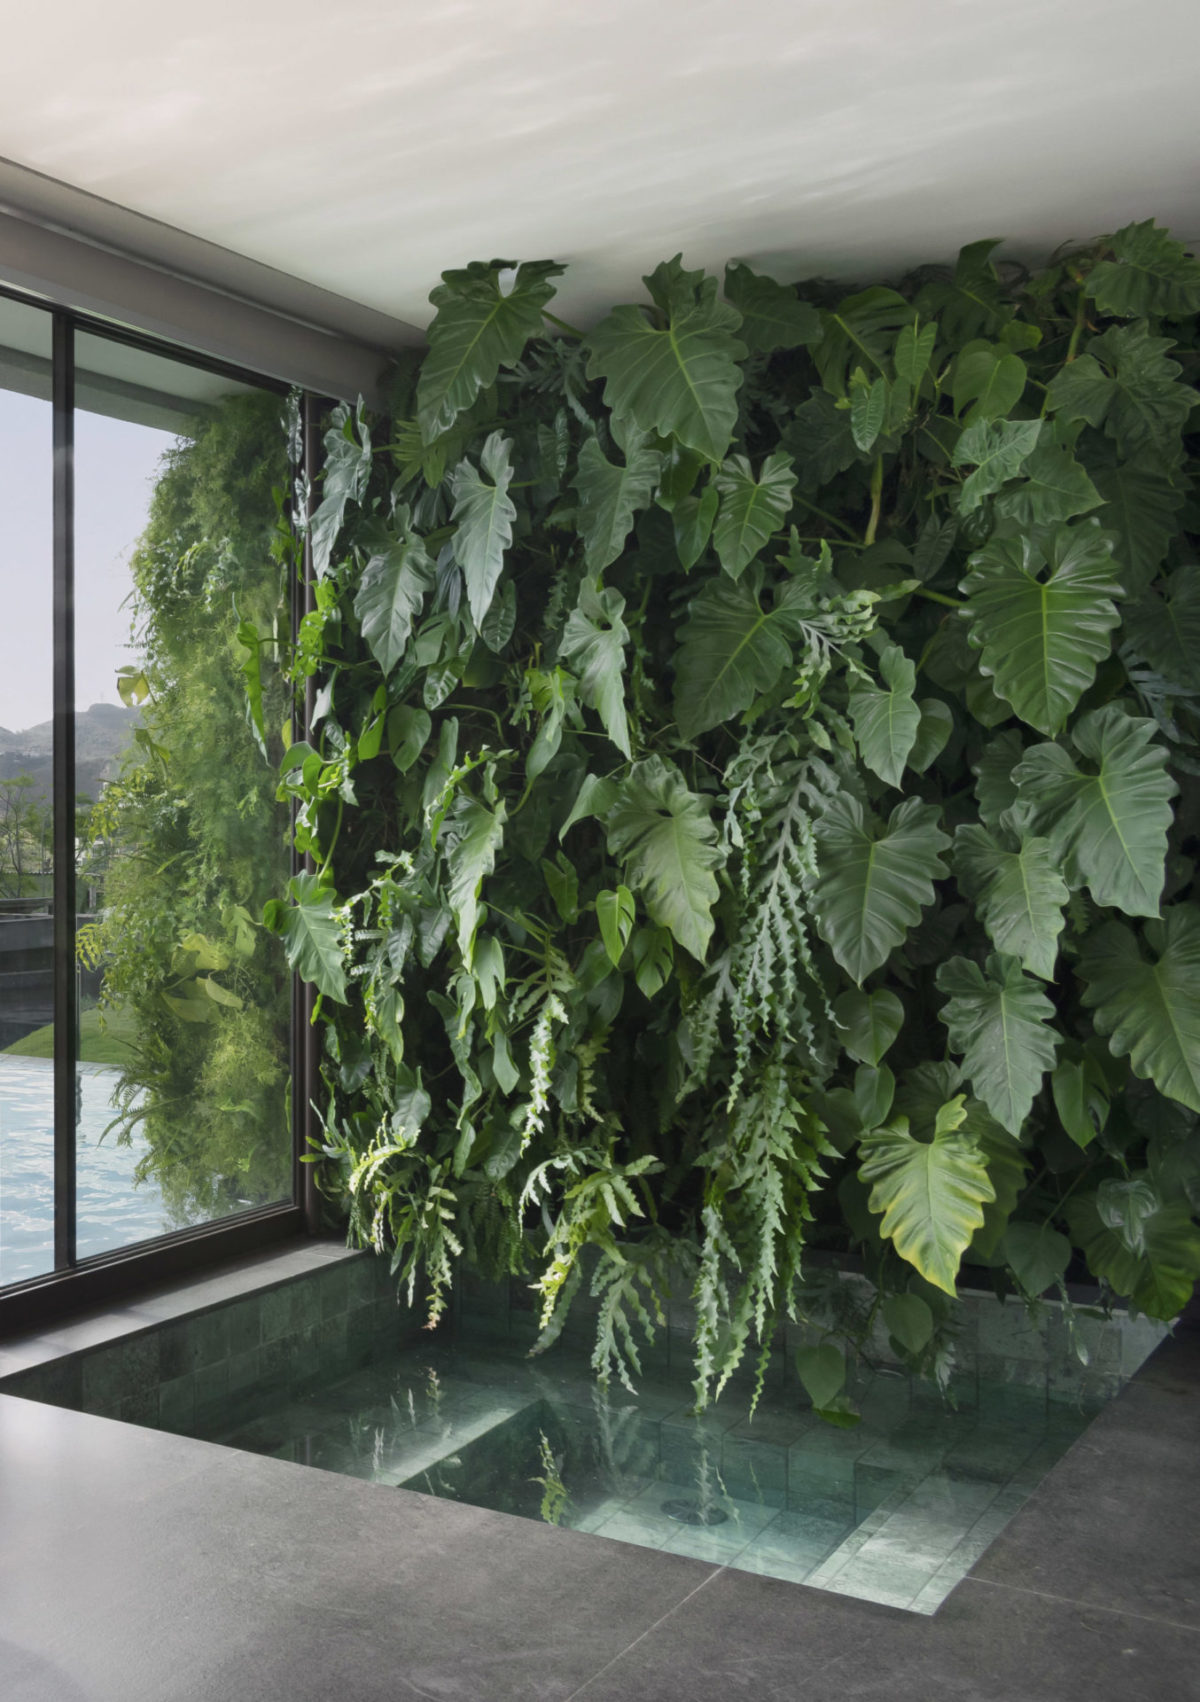 Parede verde, com plantas naturais, compondo a área da piscina, em uma casa.